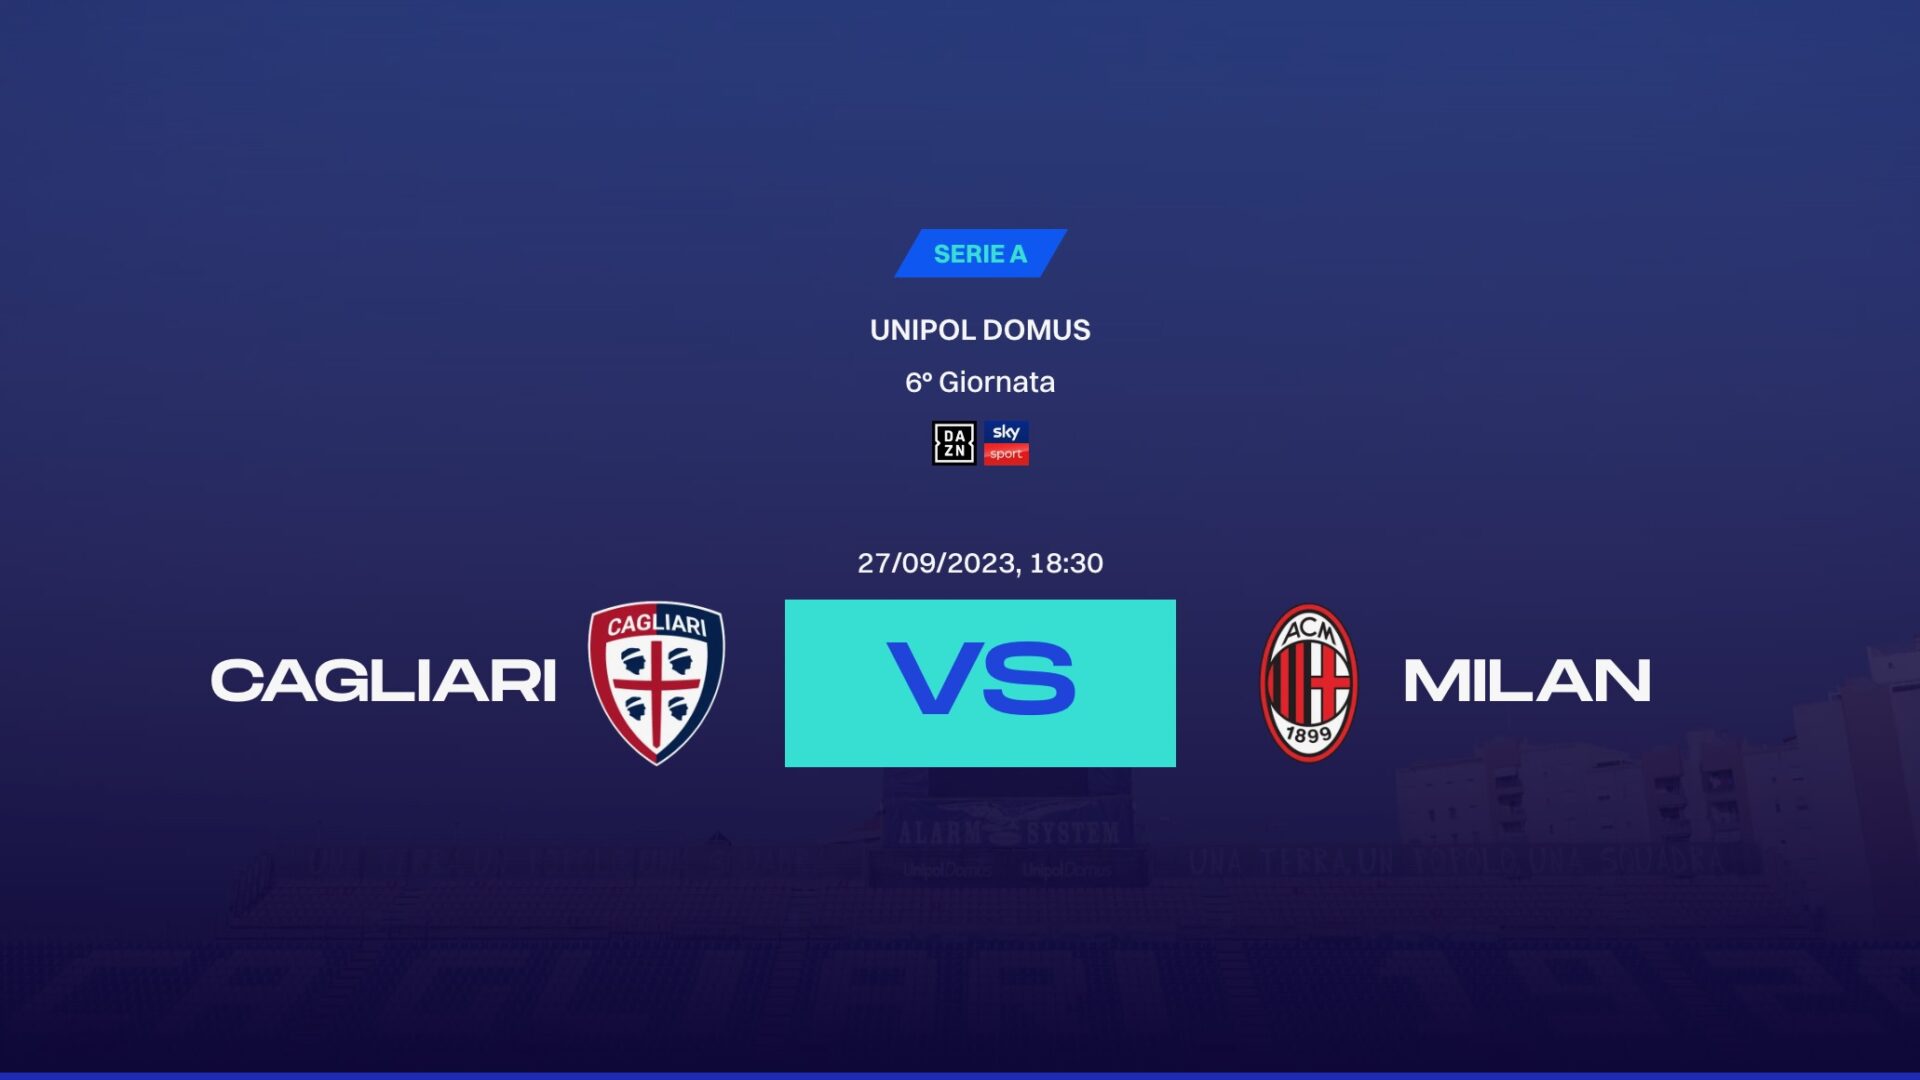 Serie A Tim 2023/2024: dove vedere Cagliari Calcio-Associazione Calcio Milanin diretta in TV e streaming, Sky, Dazn, probabili formazioni